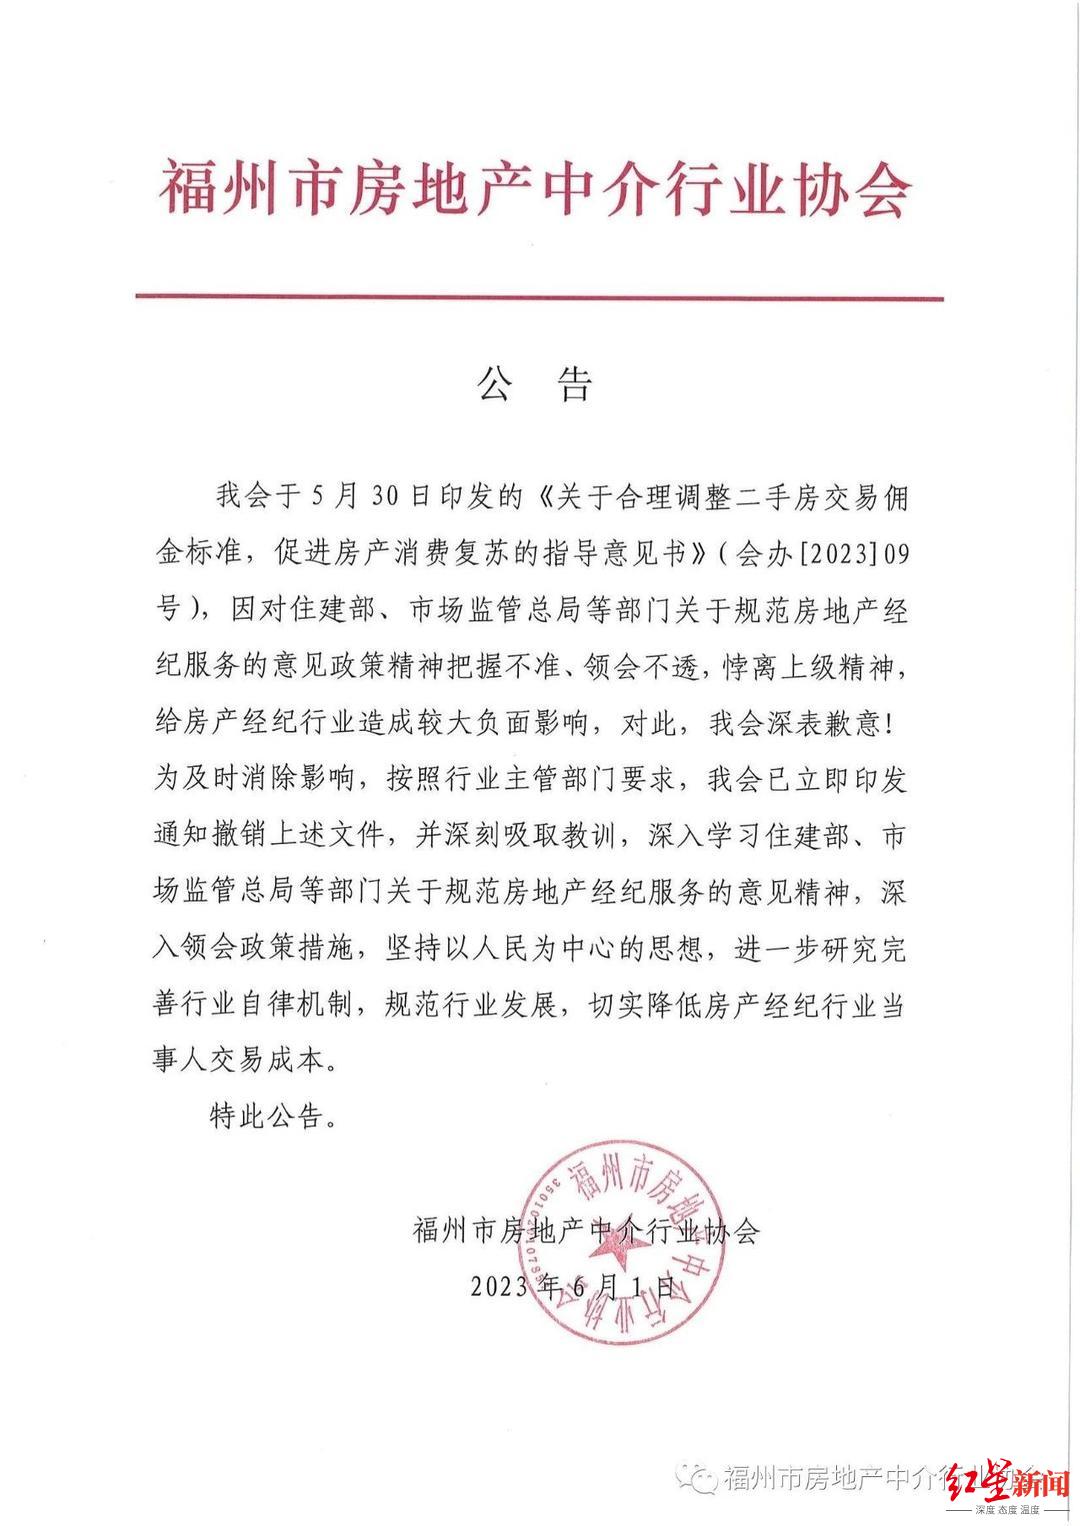 ↑6月2日凌晨，福州市房地产中介行业协会发布公告，撤销此前发布的“指导意见书”